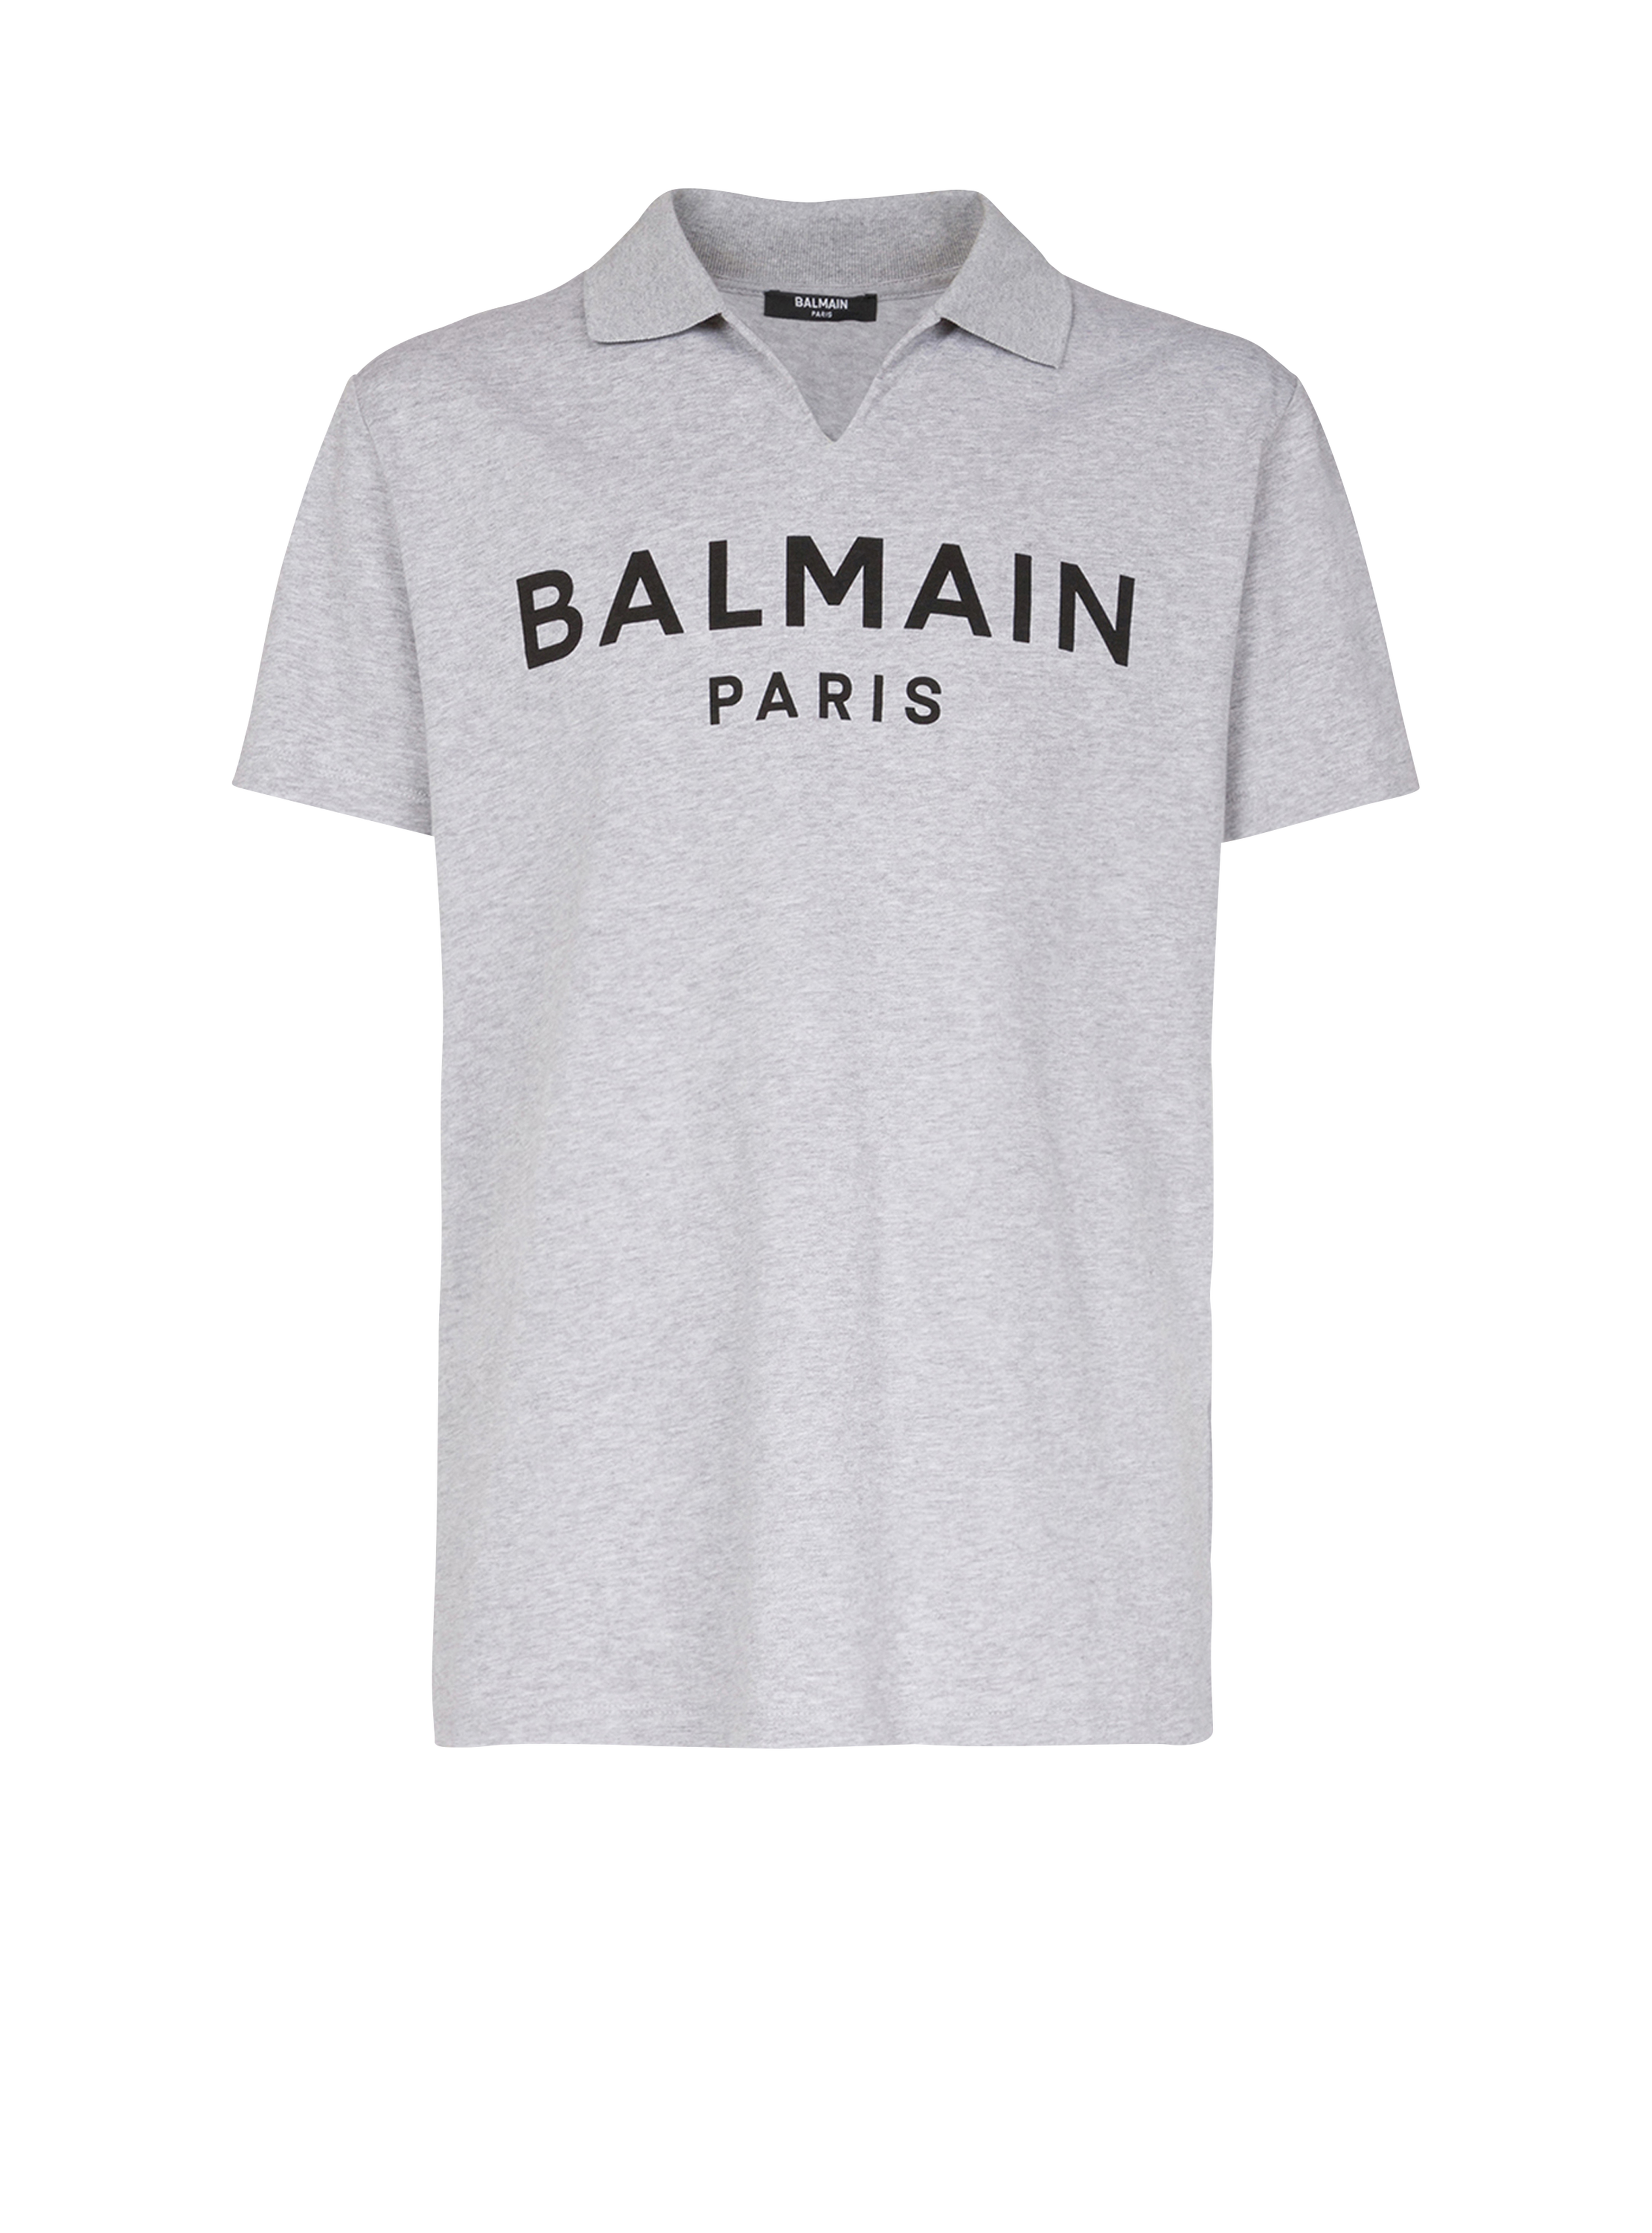 Polo en coton imprimé logo Balmain, gris